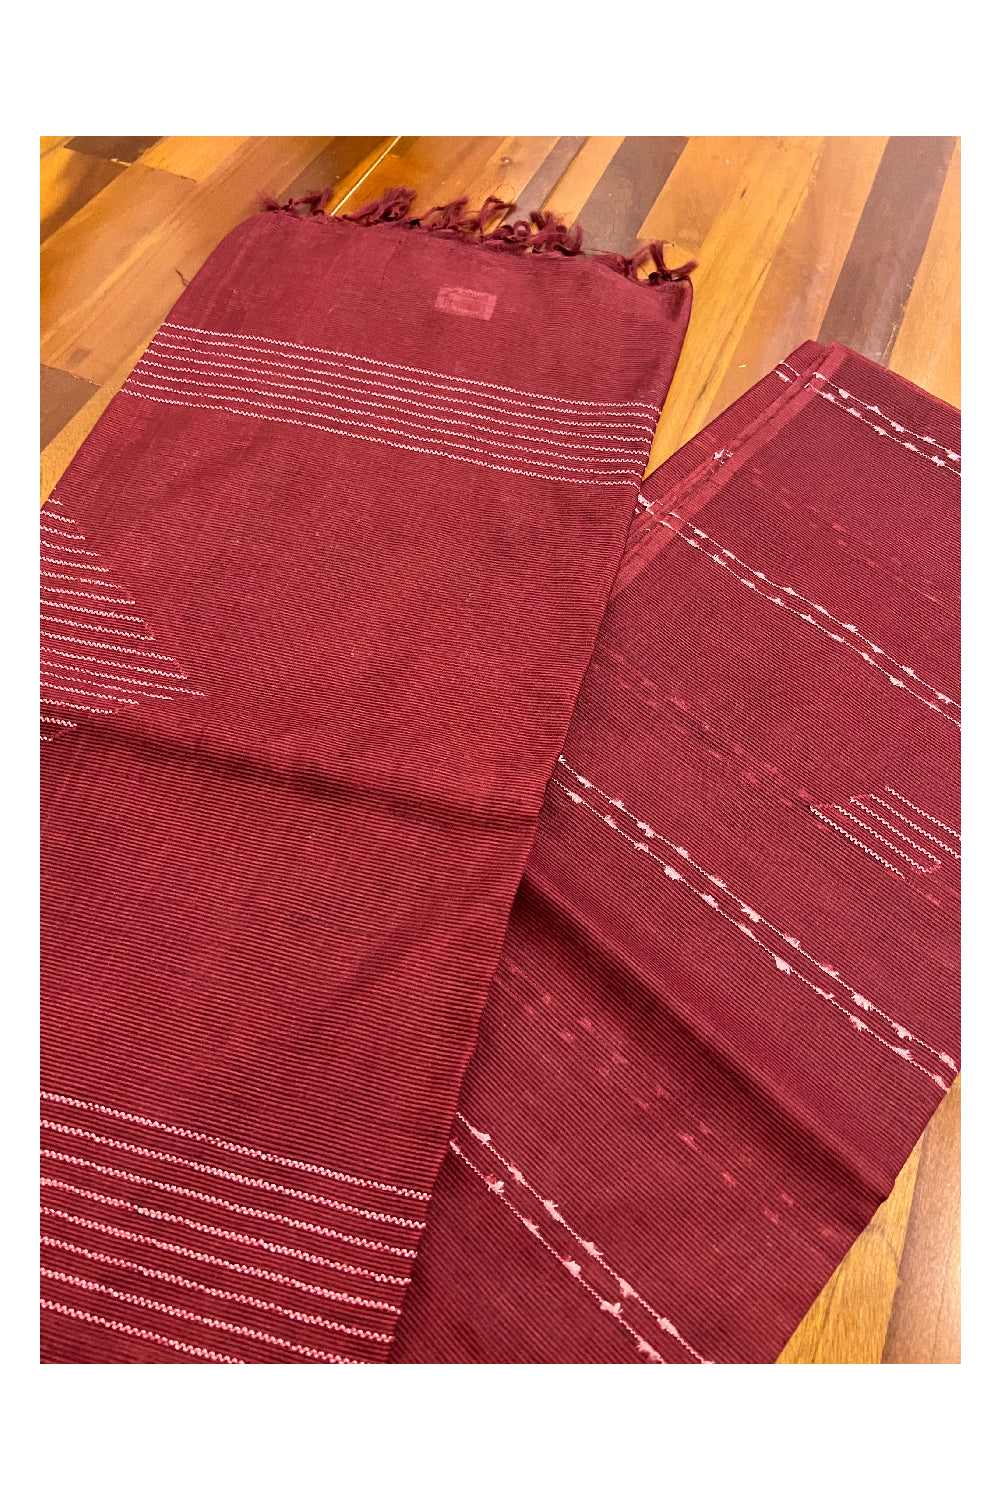 Southloom Dark Brick Red Cotton Designer with White Thread Work